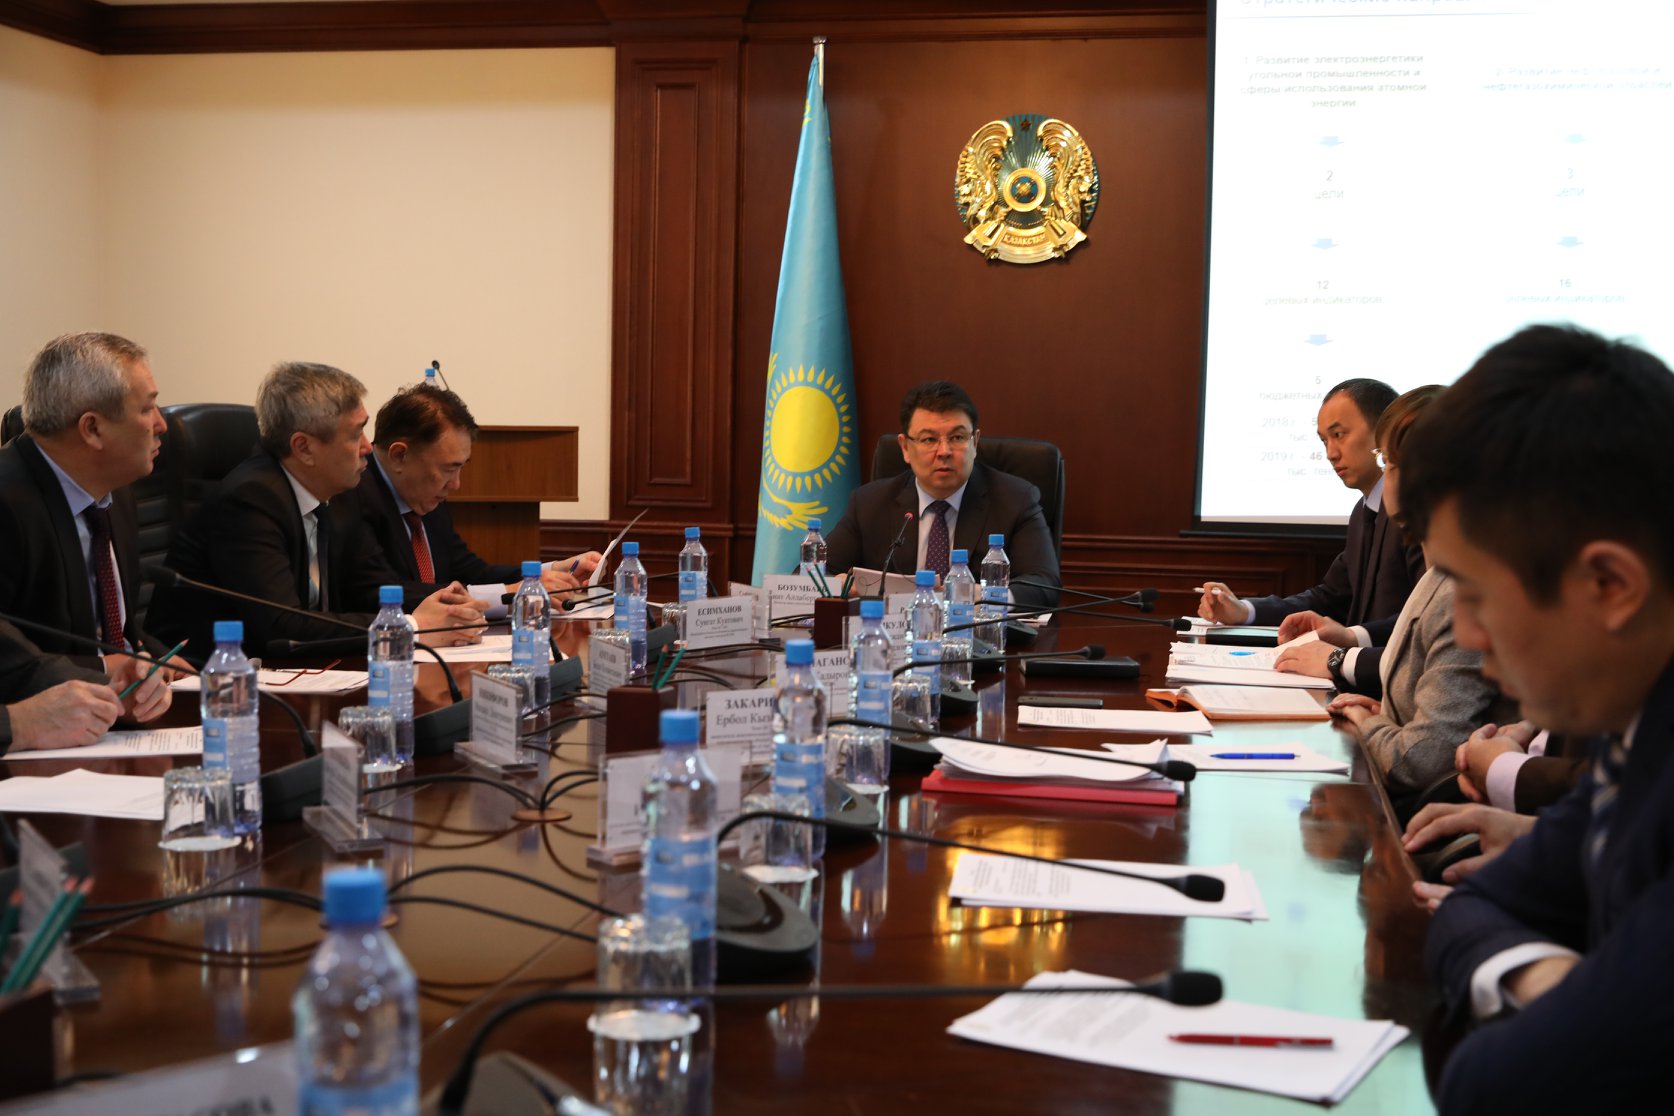 Отчётная встреча Министра энергетики перед Общественным советом по вопросам топливно-энергетического комплекса и экологии состоялась 31 мая